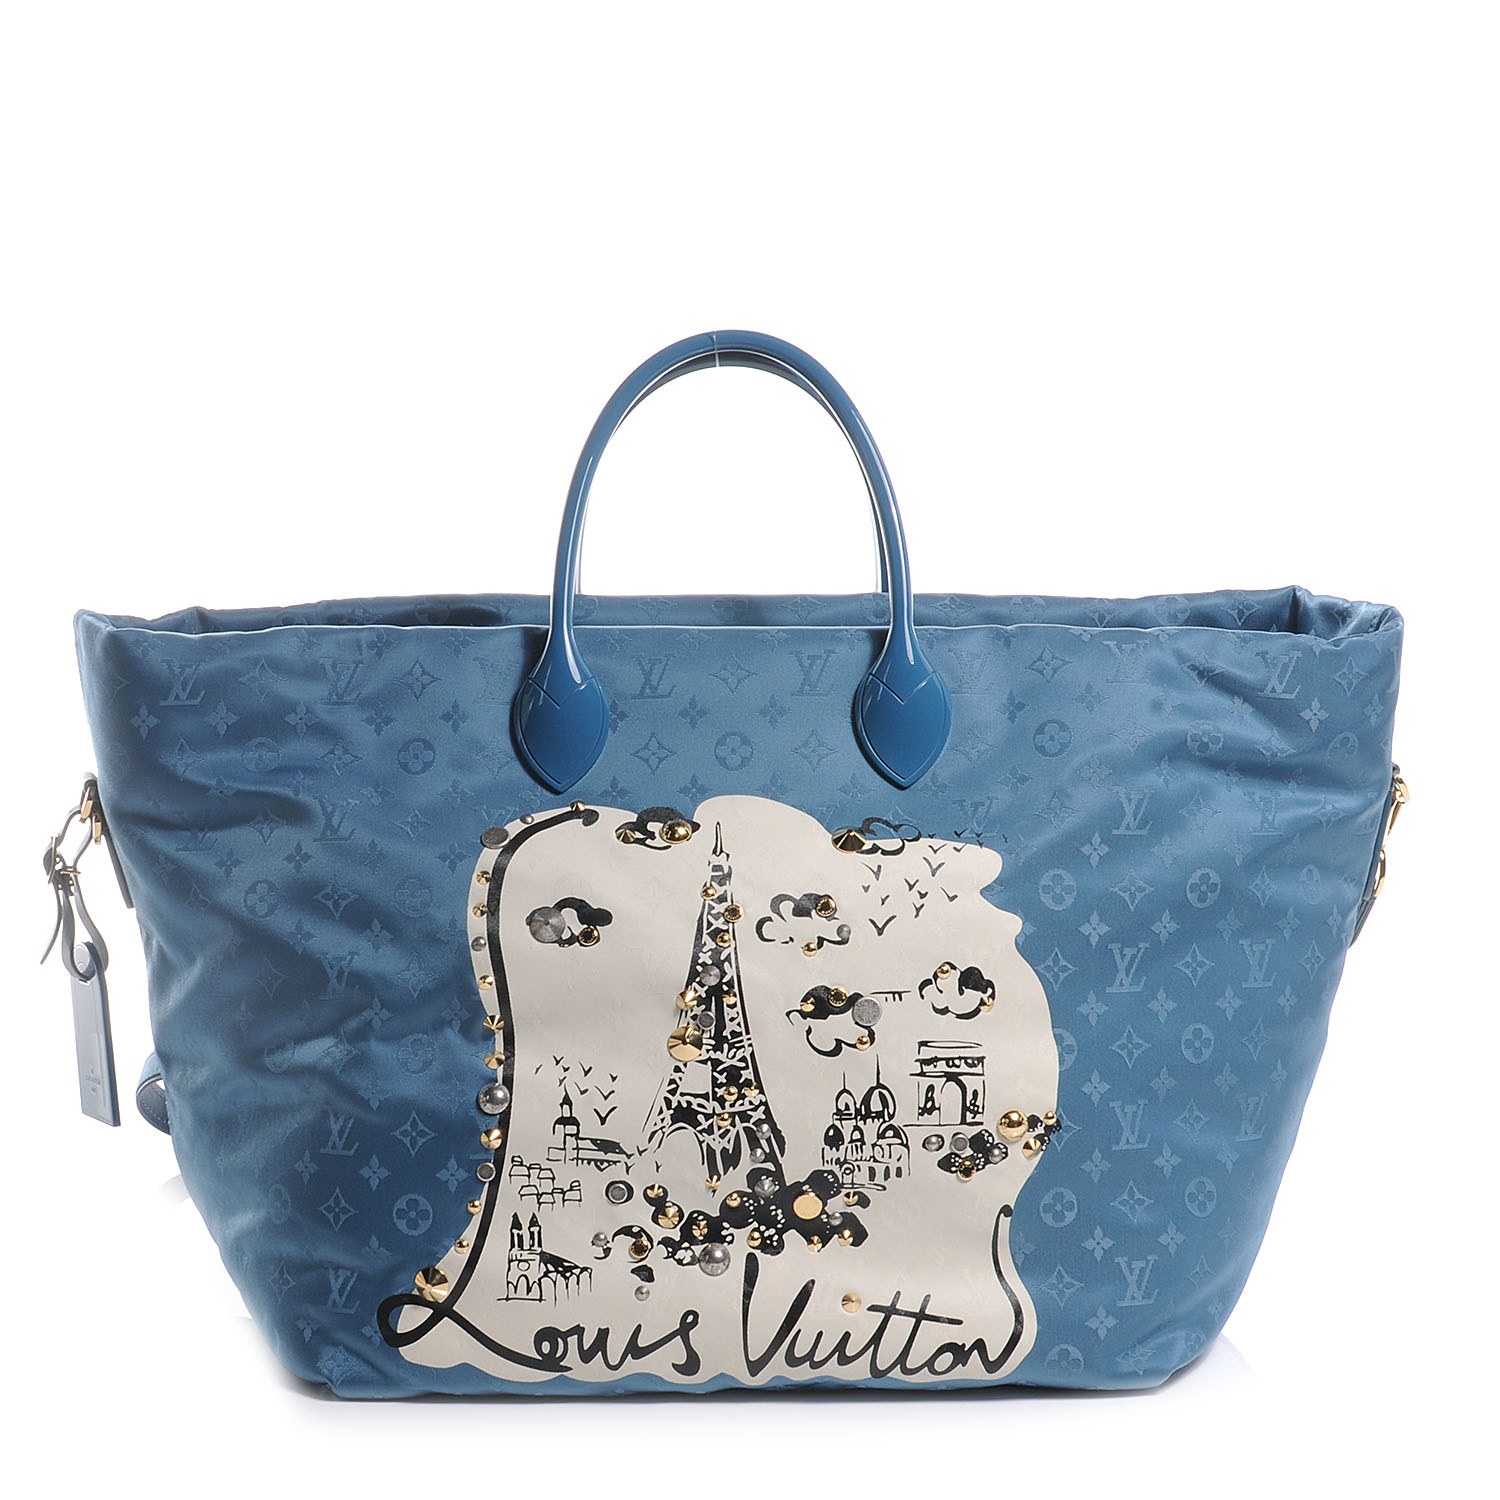 Louis Vuitton Nylon Monogram Nouvelle Vague La Tour Eiffel Beach Bag Turquoise Fashionphile